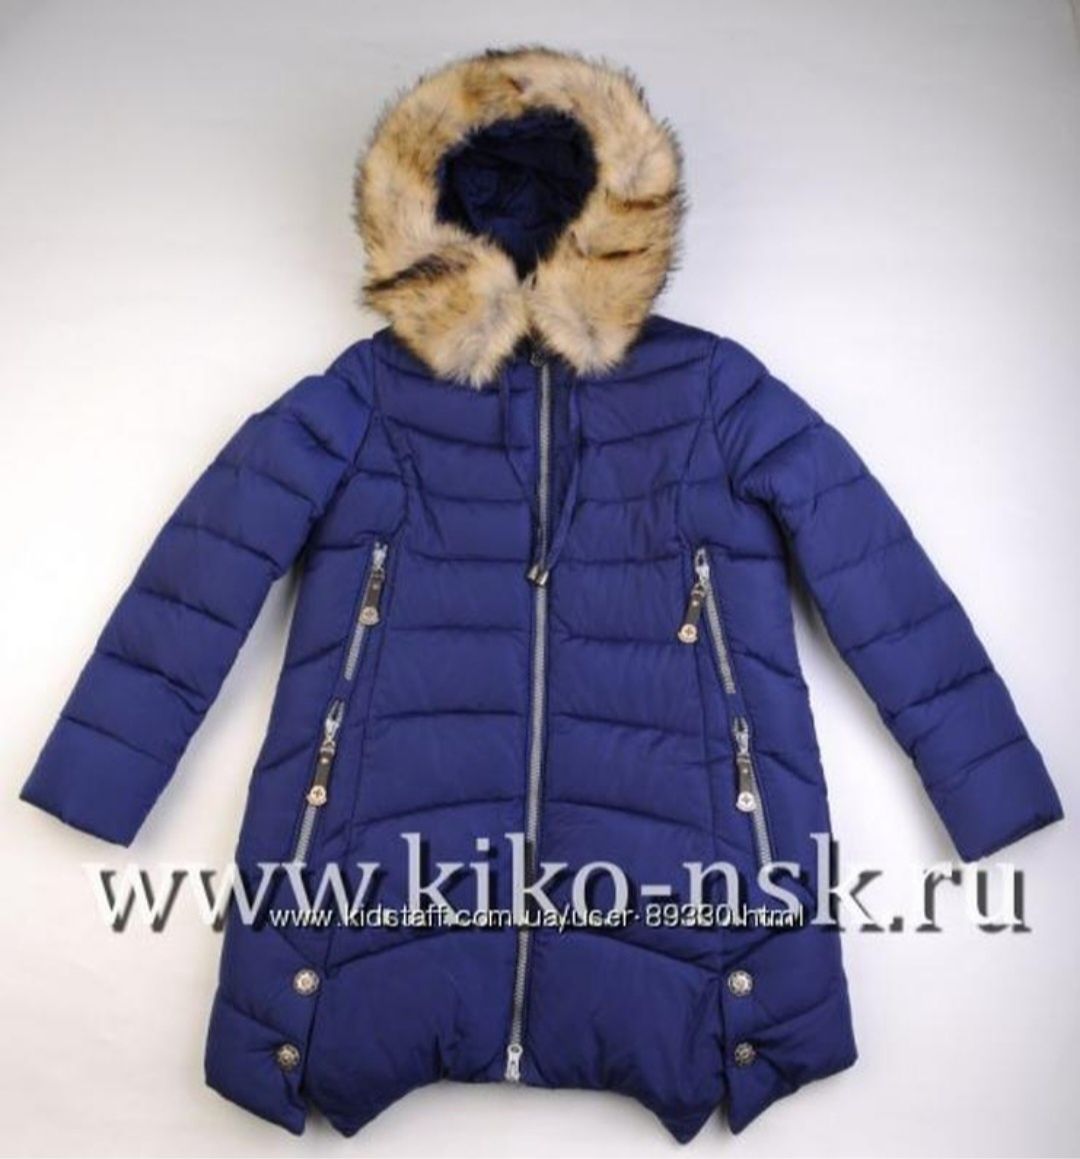 Куртка Кико зима